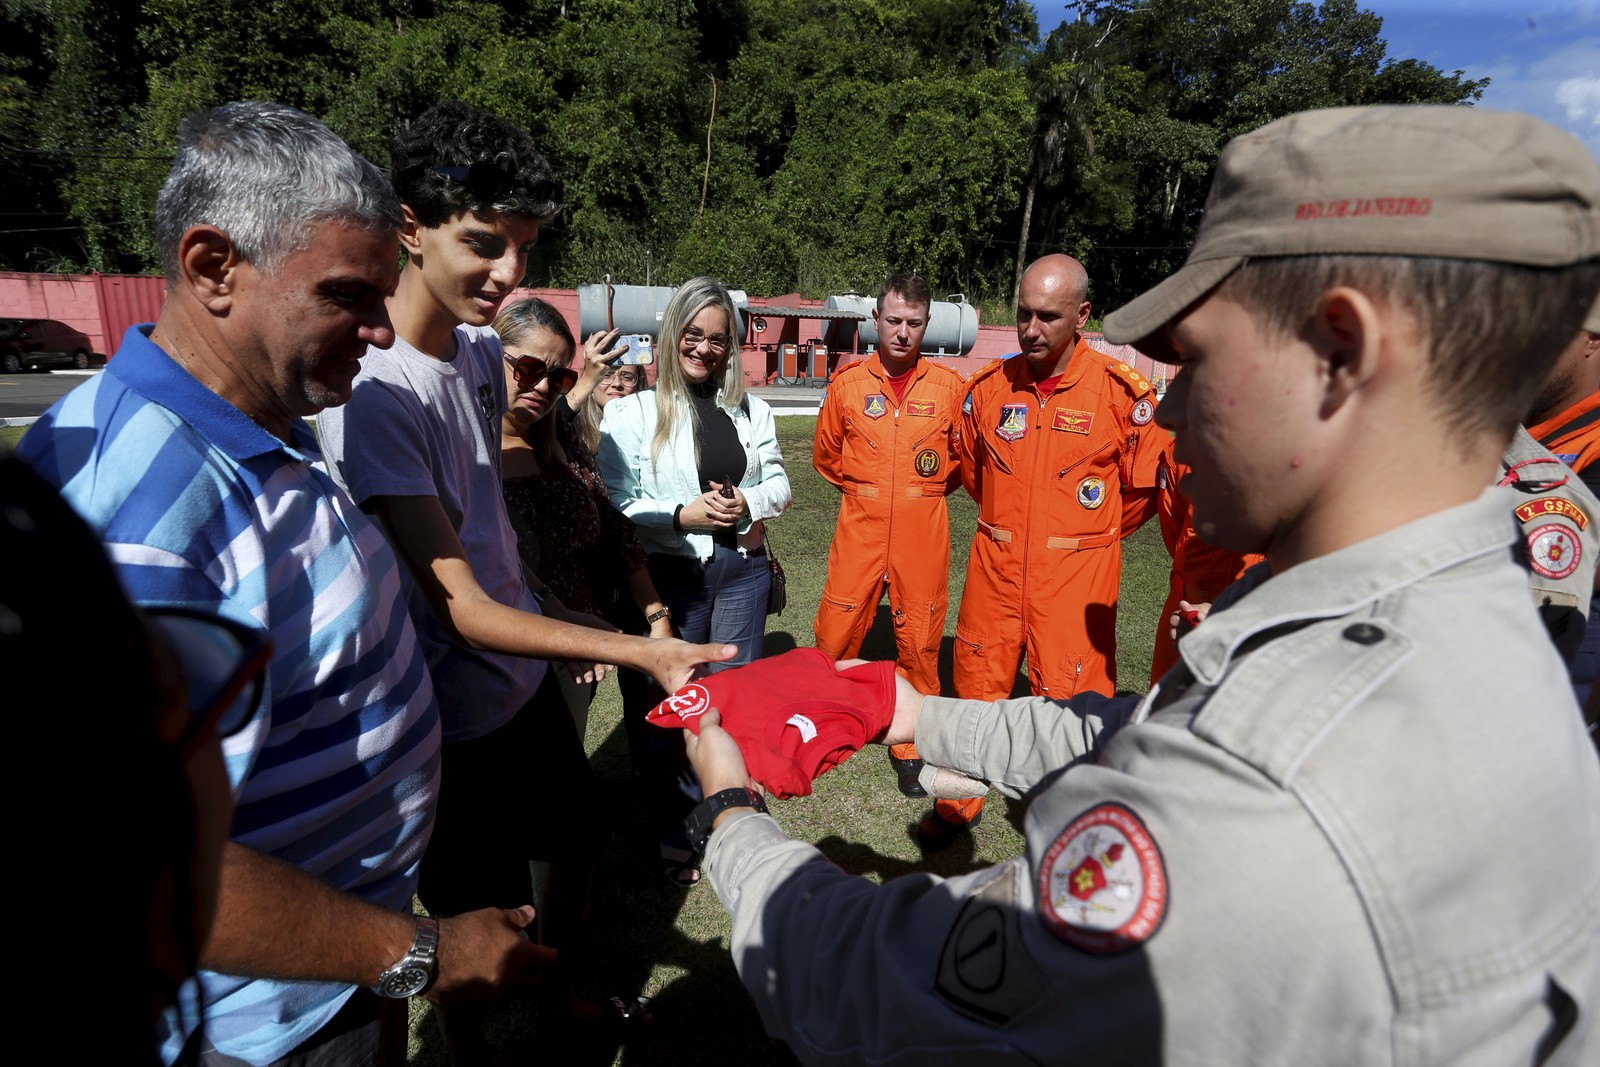 Christhian recebe de presente de um socorrista uma camisa do Corpo de Bombeiros. — Foto: Fabiano Rocha / Agência O Globo